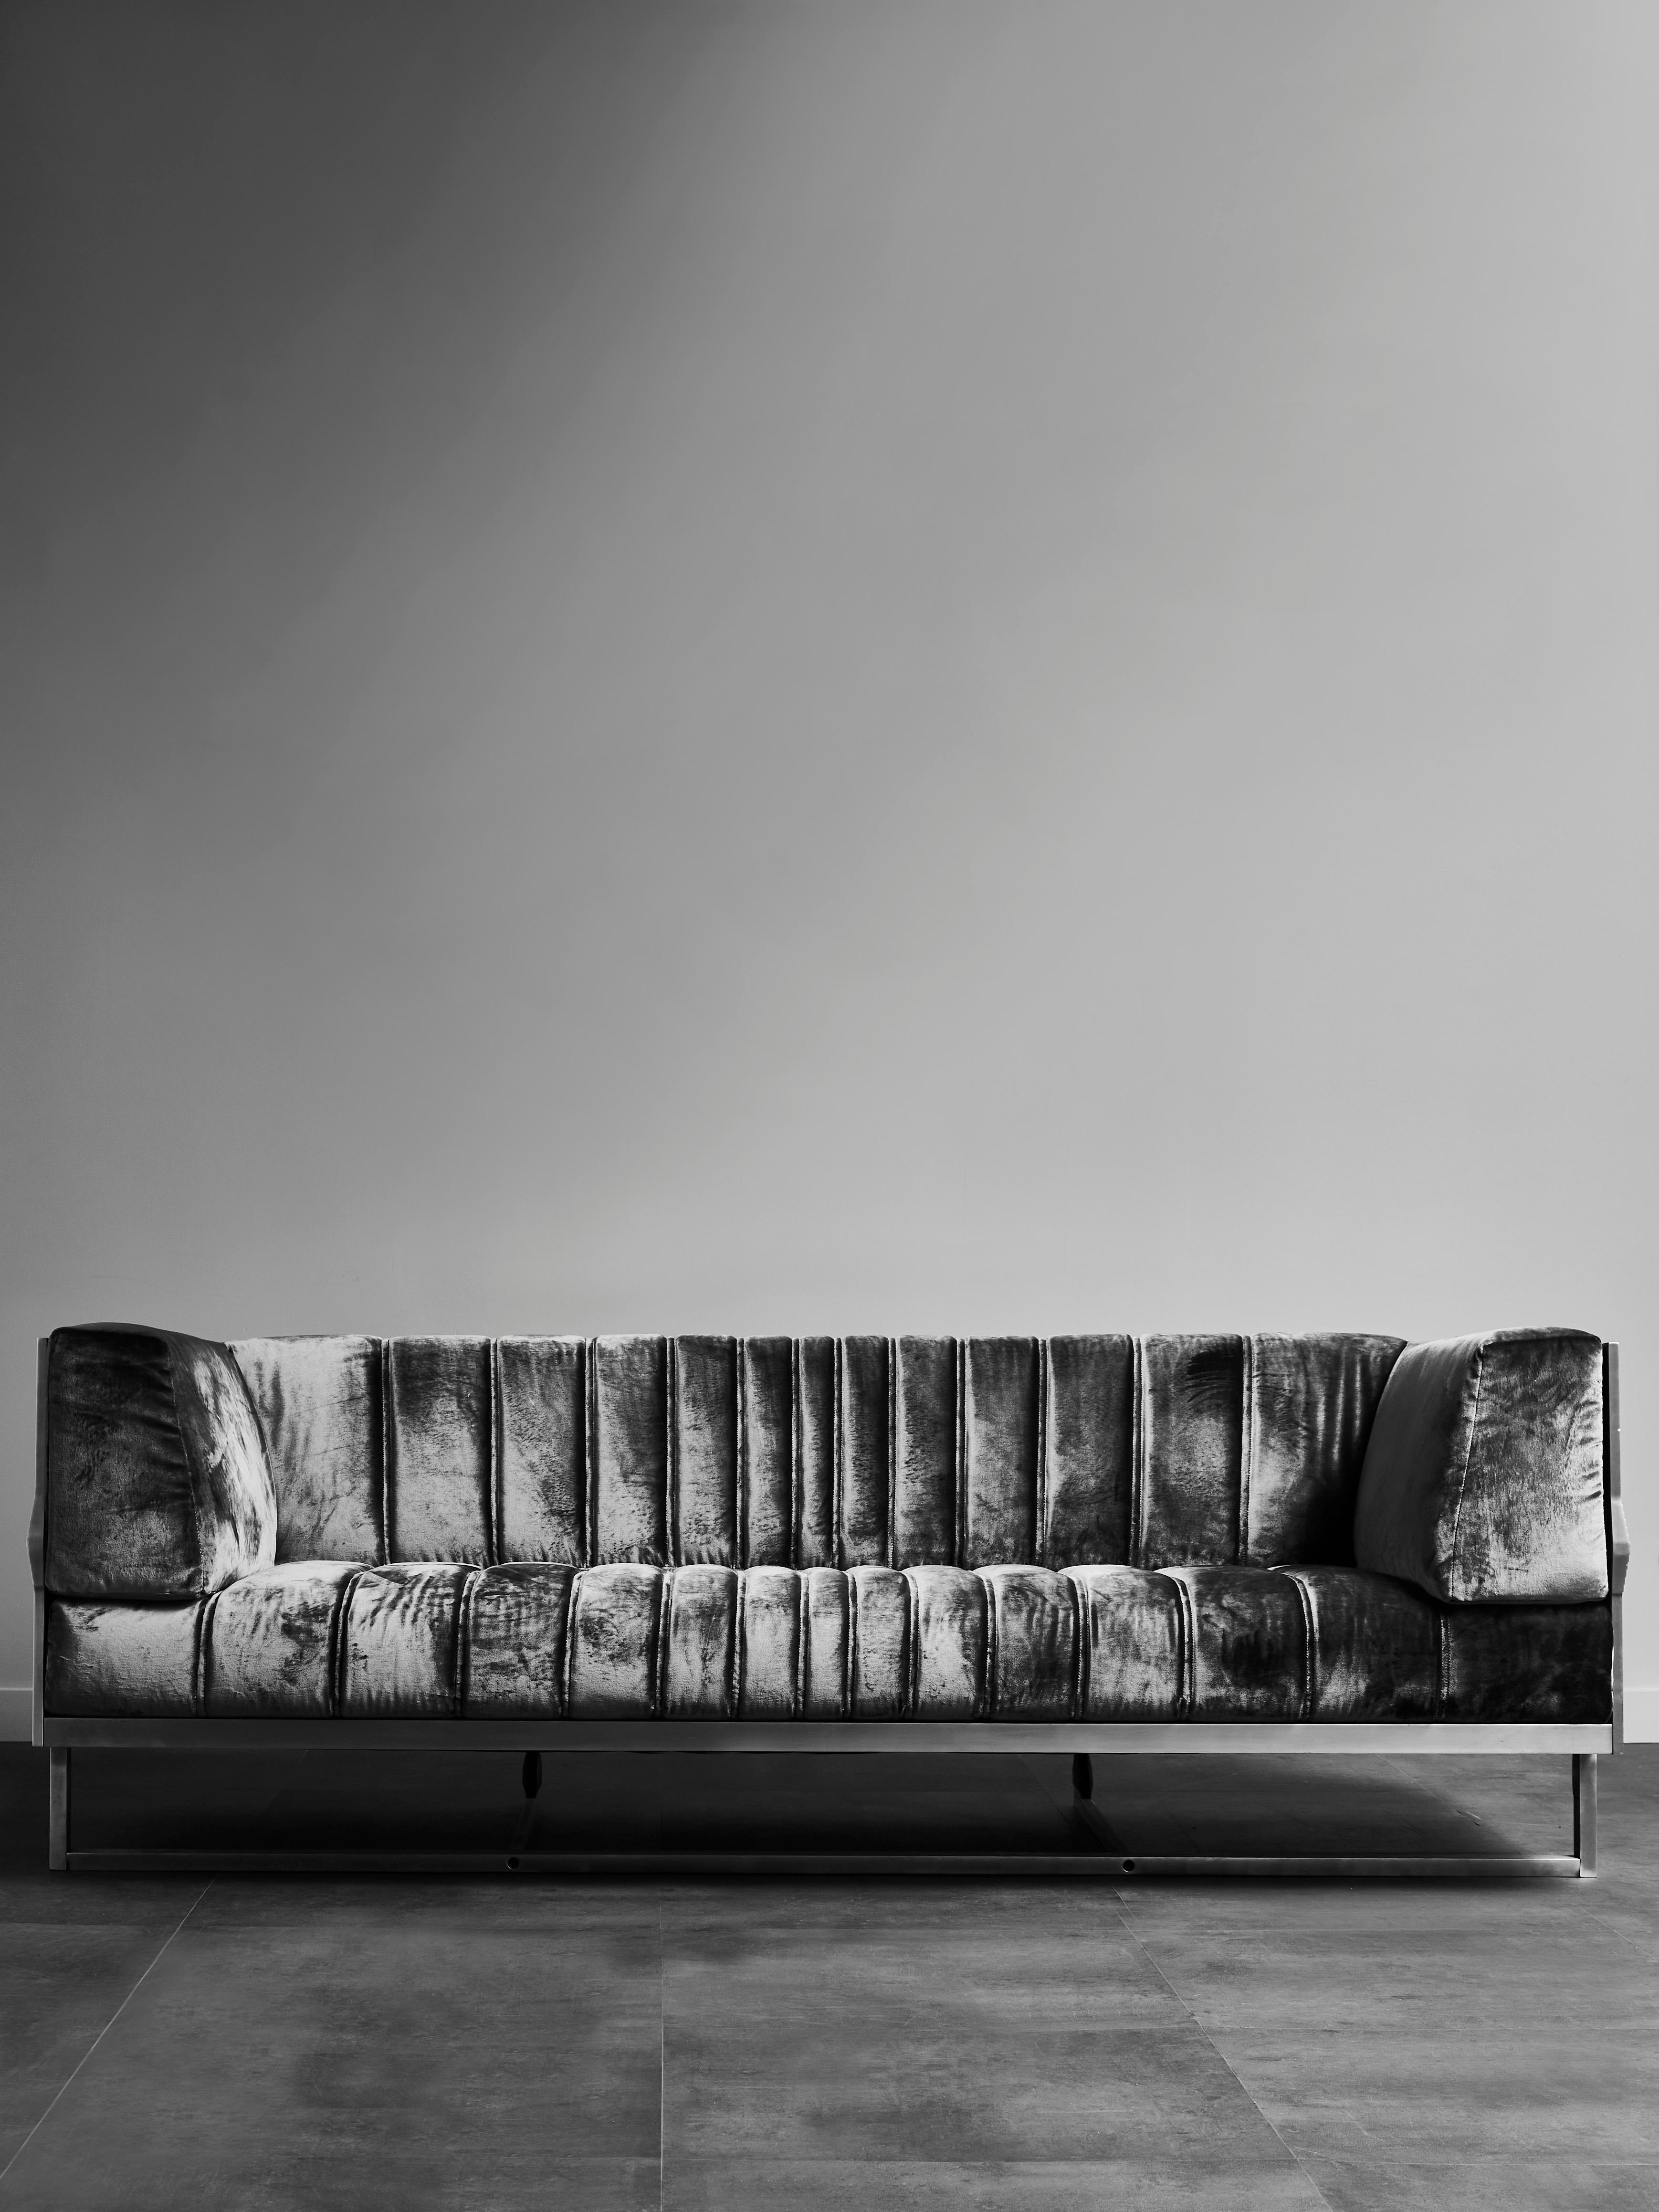 Einzigartiges Sofa aus geschliffenem Edelstahl, gepolstert mit hochwertigem braunem Samt von Ddar.
Einzigartiges und signiertes Stück von Erwan Boulloud für die Galerie Glustin.
Frankreich, 2017.
   